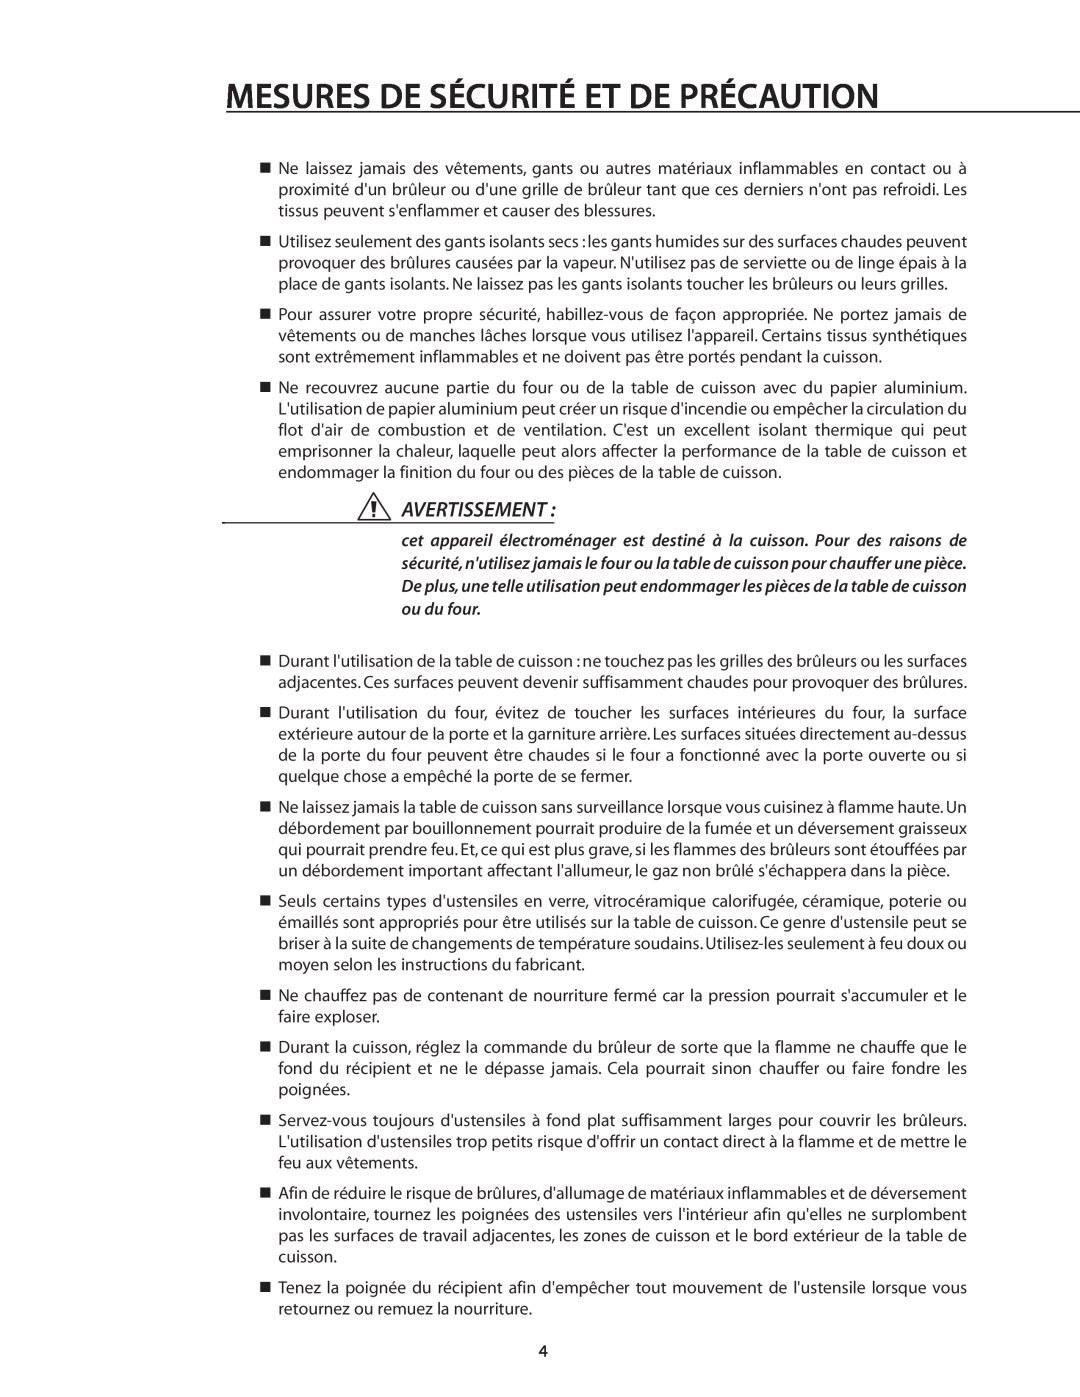 DCS RDS-305 manual Mesures De Sécurité Et De Précaution, Avertissement 